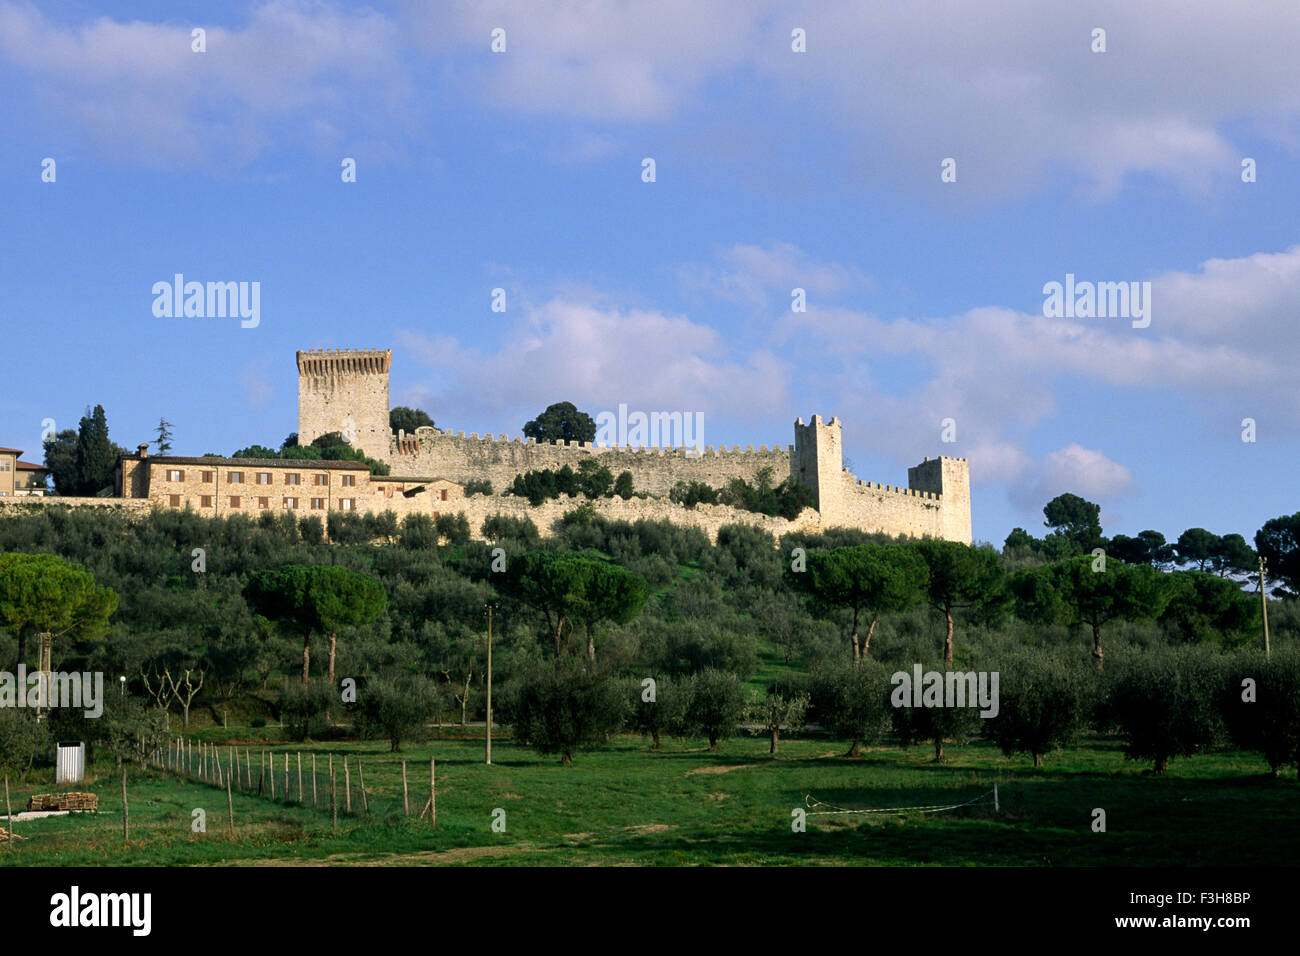 Italy, Umbria, Trasimeno, Castiglione del Lago, castle Stock Photo